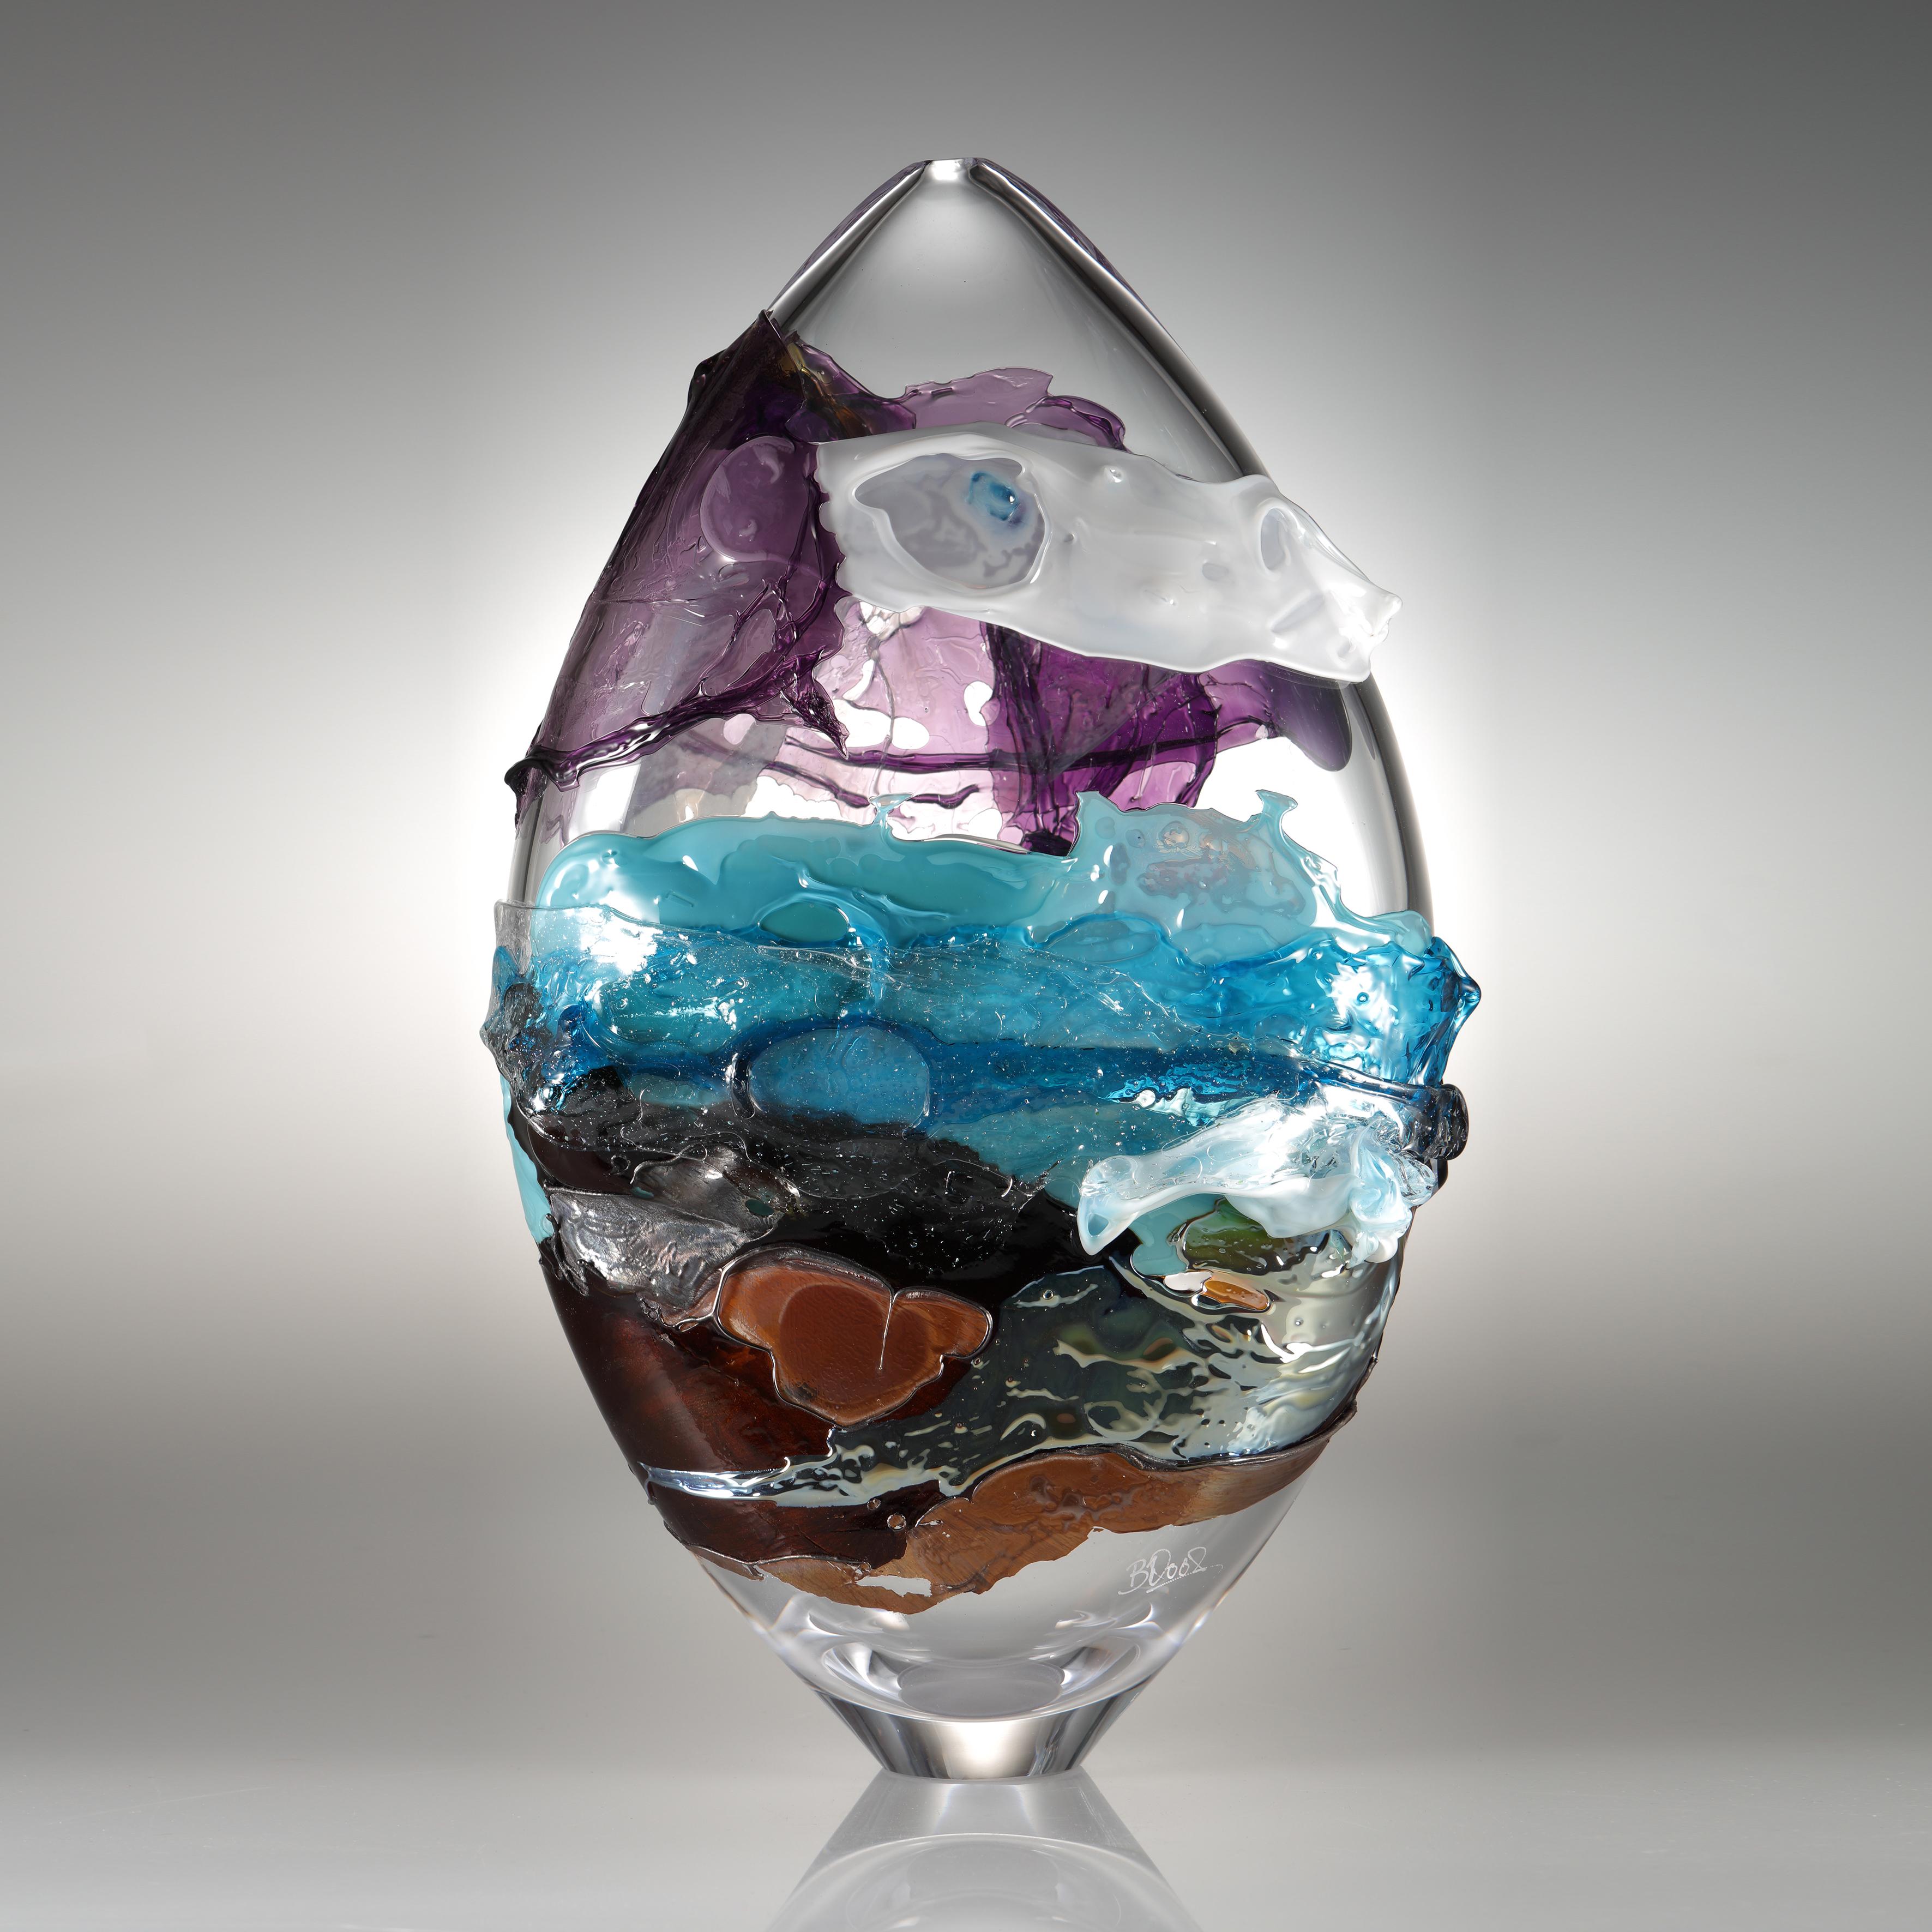 Shore II est un vase en verre unique de la collection Molten Landscapes de l'artiste britannique Bethany Wood. Une passion égale pour la peinture inspire la façon dont elle contrôle et manipule son verre. Recréant la nature fugace des coups de